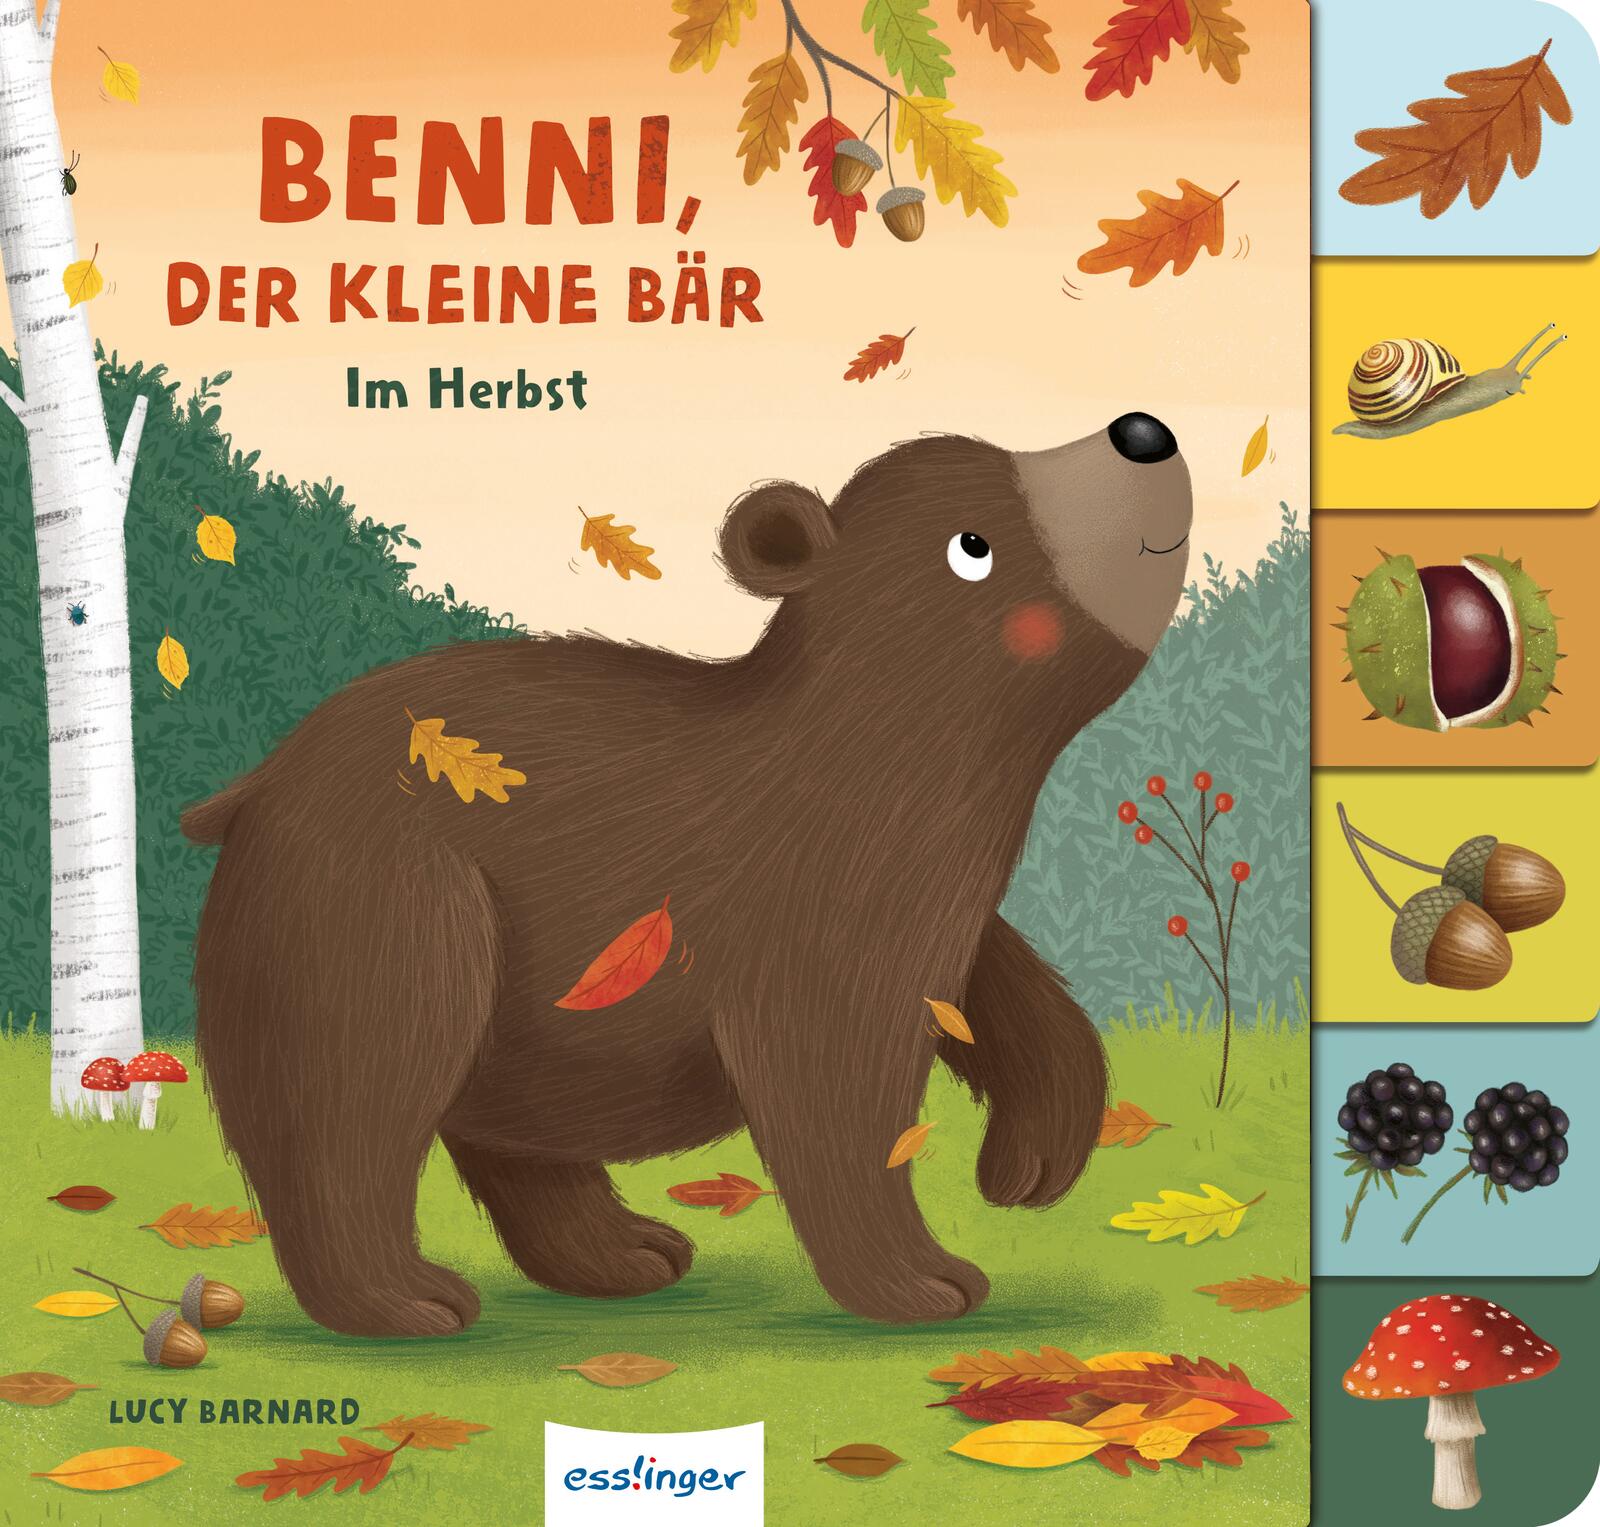 Buchcover "Benni, der kleine Bär", Esslinger 